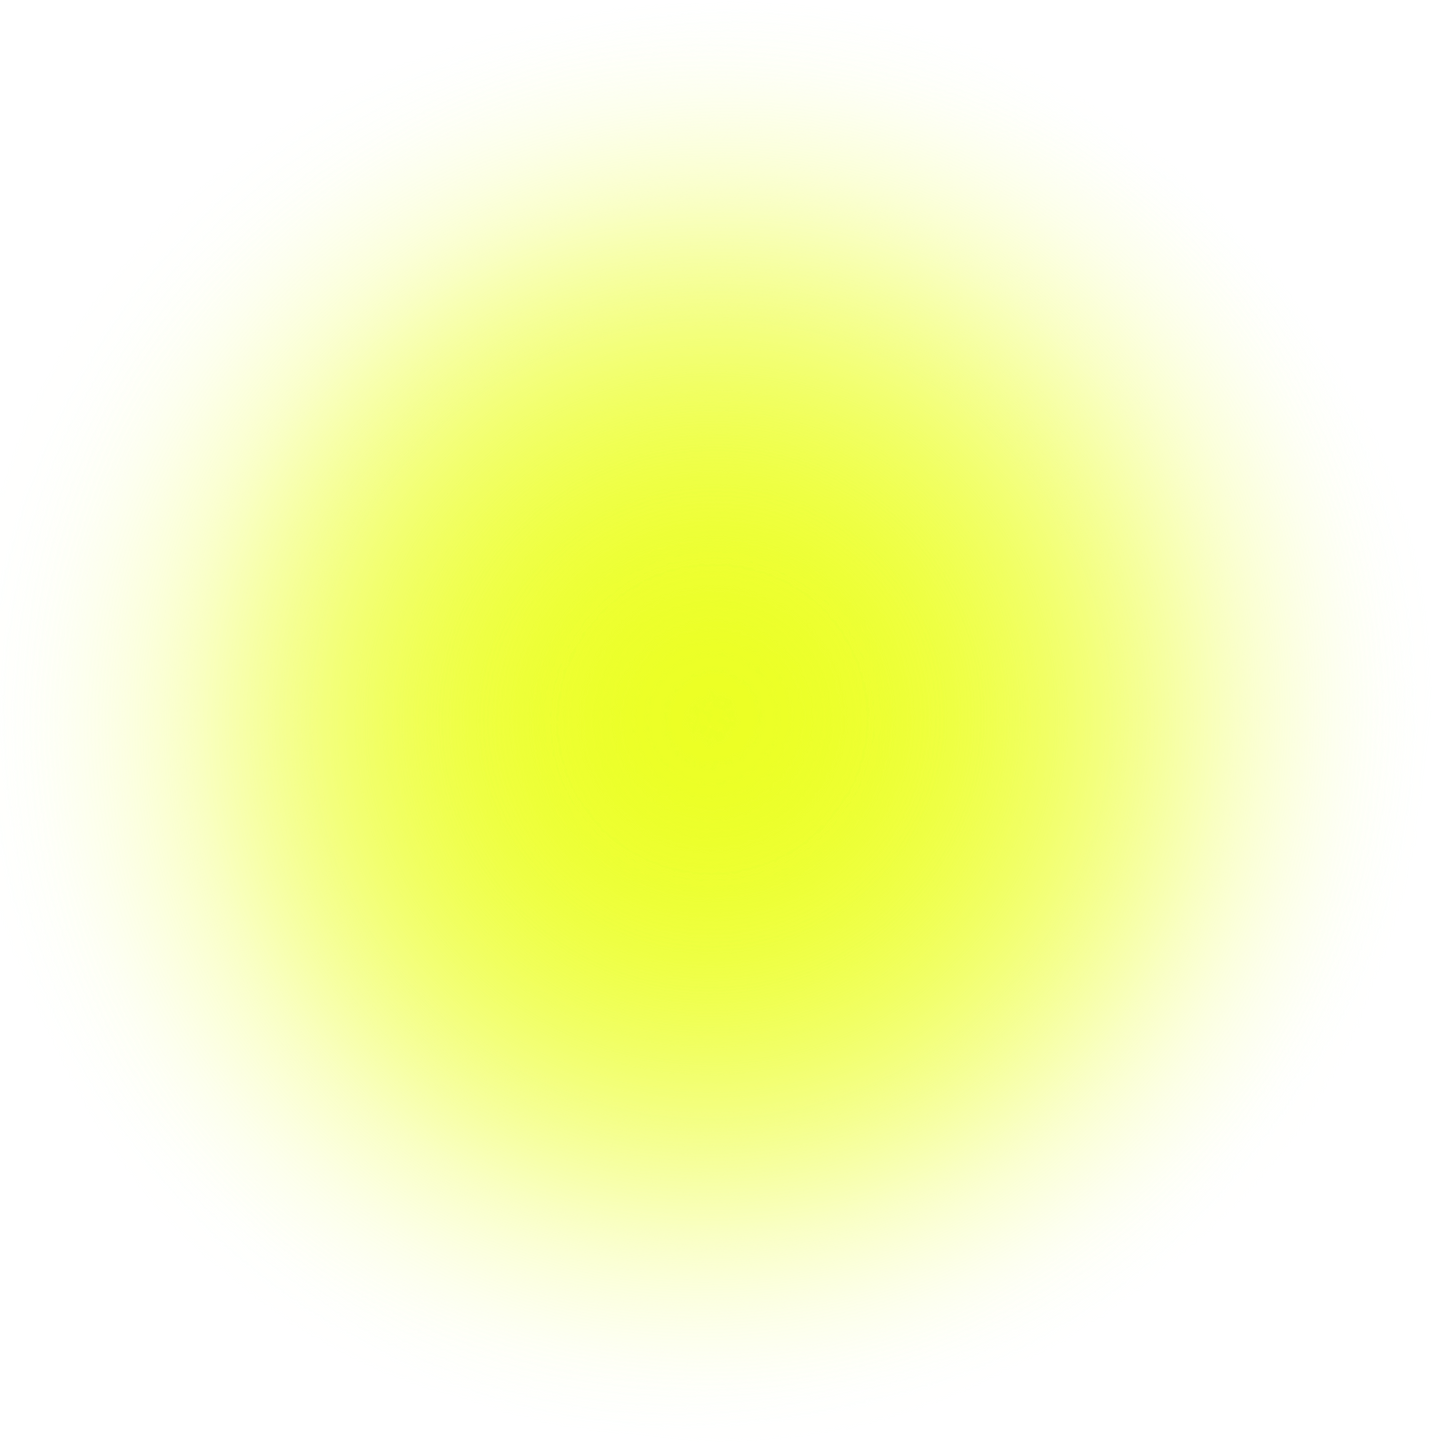 Yellow airbrush texture